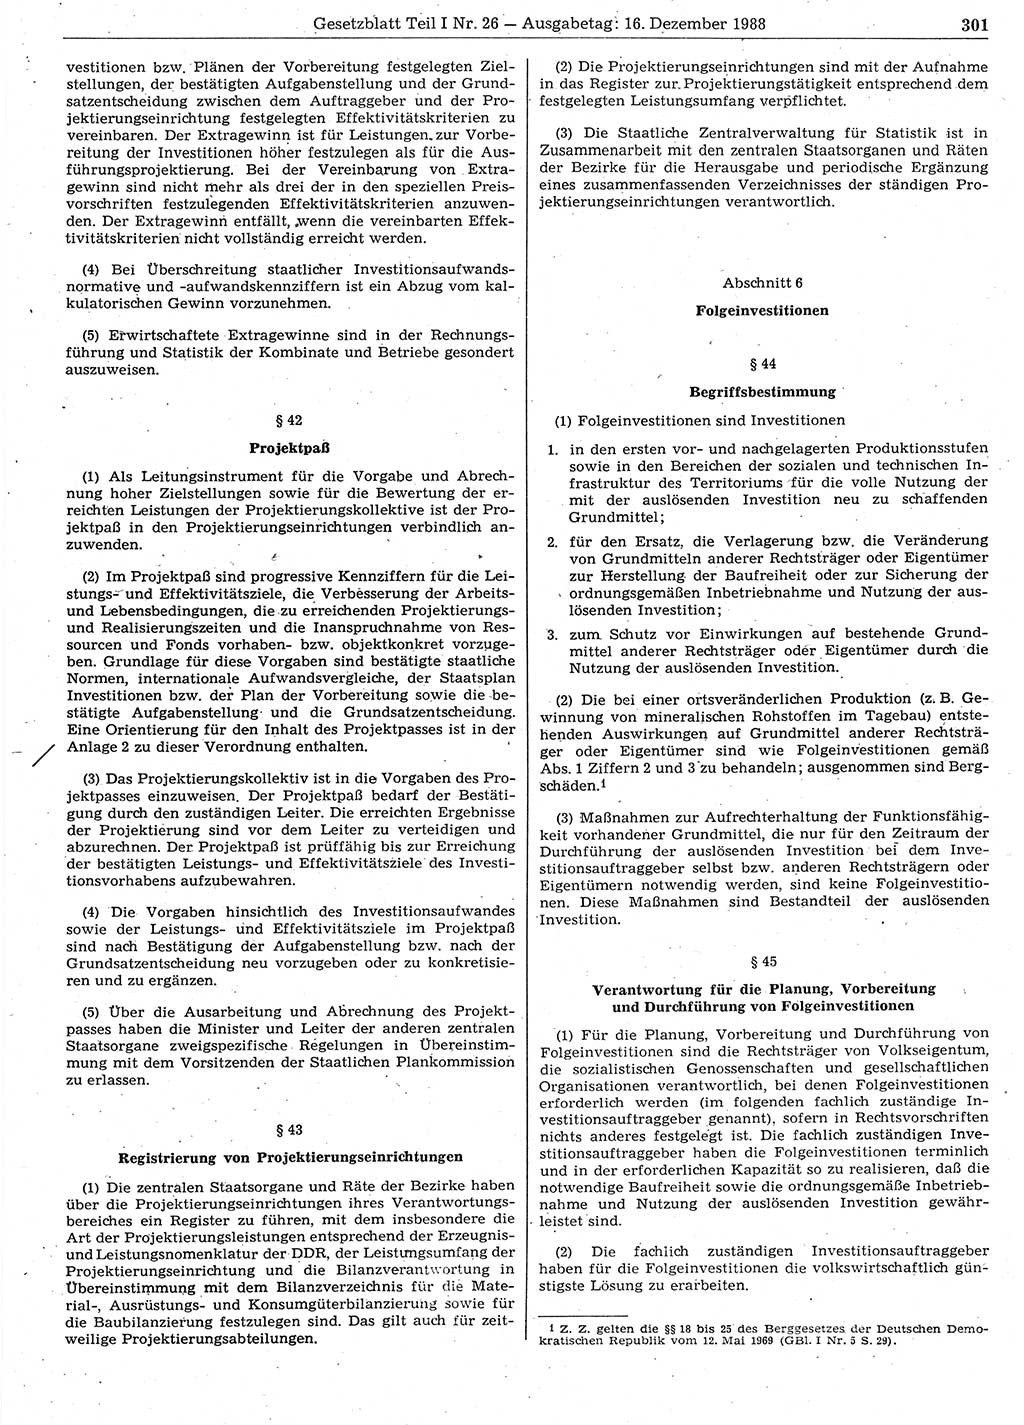 Gesetzblatt (GBl.) der Deutschen Demokratischen Republik (DDR) Teil Ⅰ 1988, Seite 301 (GBl. DDR Ⅰ 1988, S. 301)